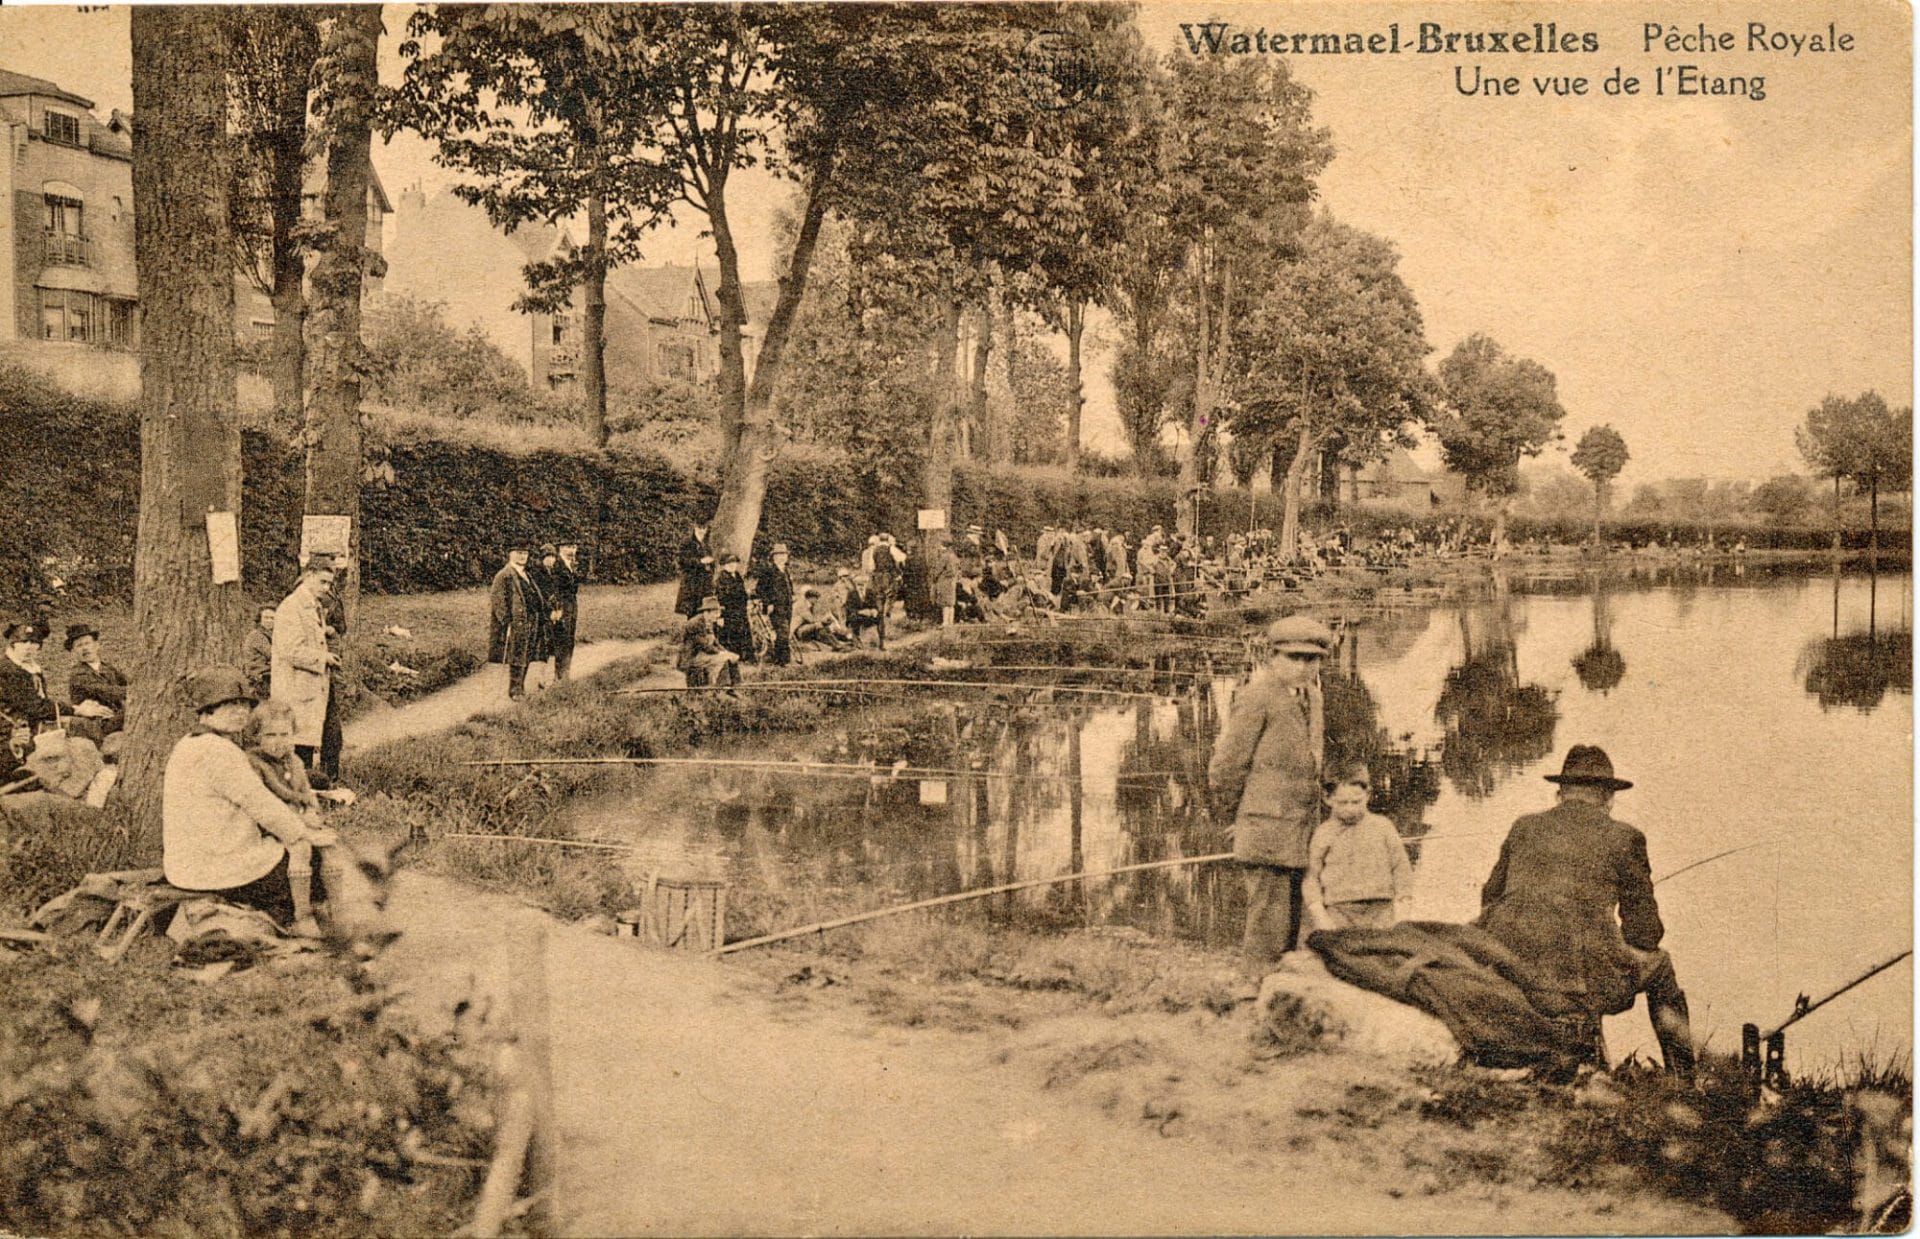 L'étang des Pêcheries royales a été créé autour de 1900. Les pêcheurs y affluent; - Carte postale, vers 1920-25. 